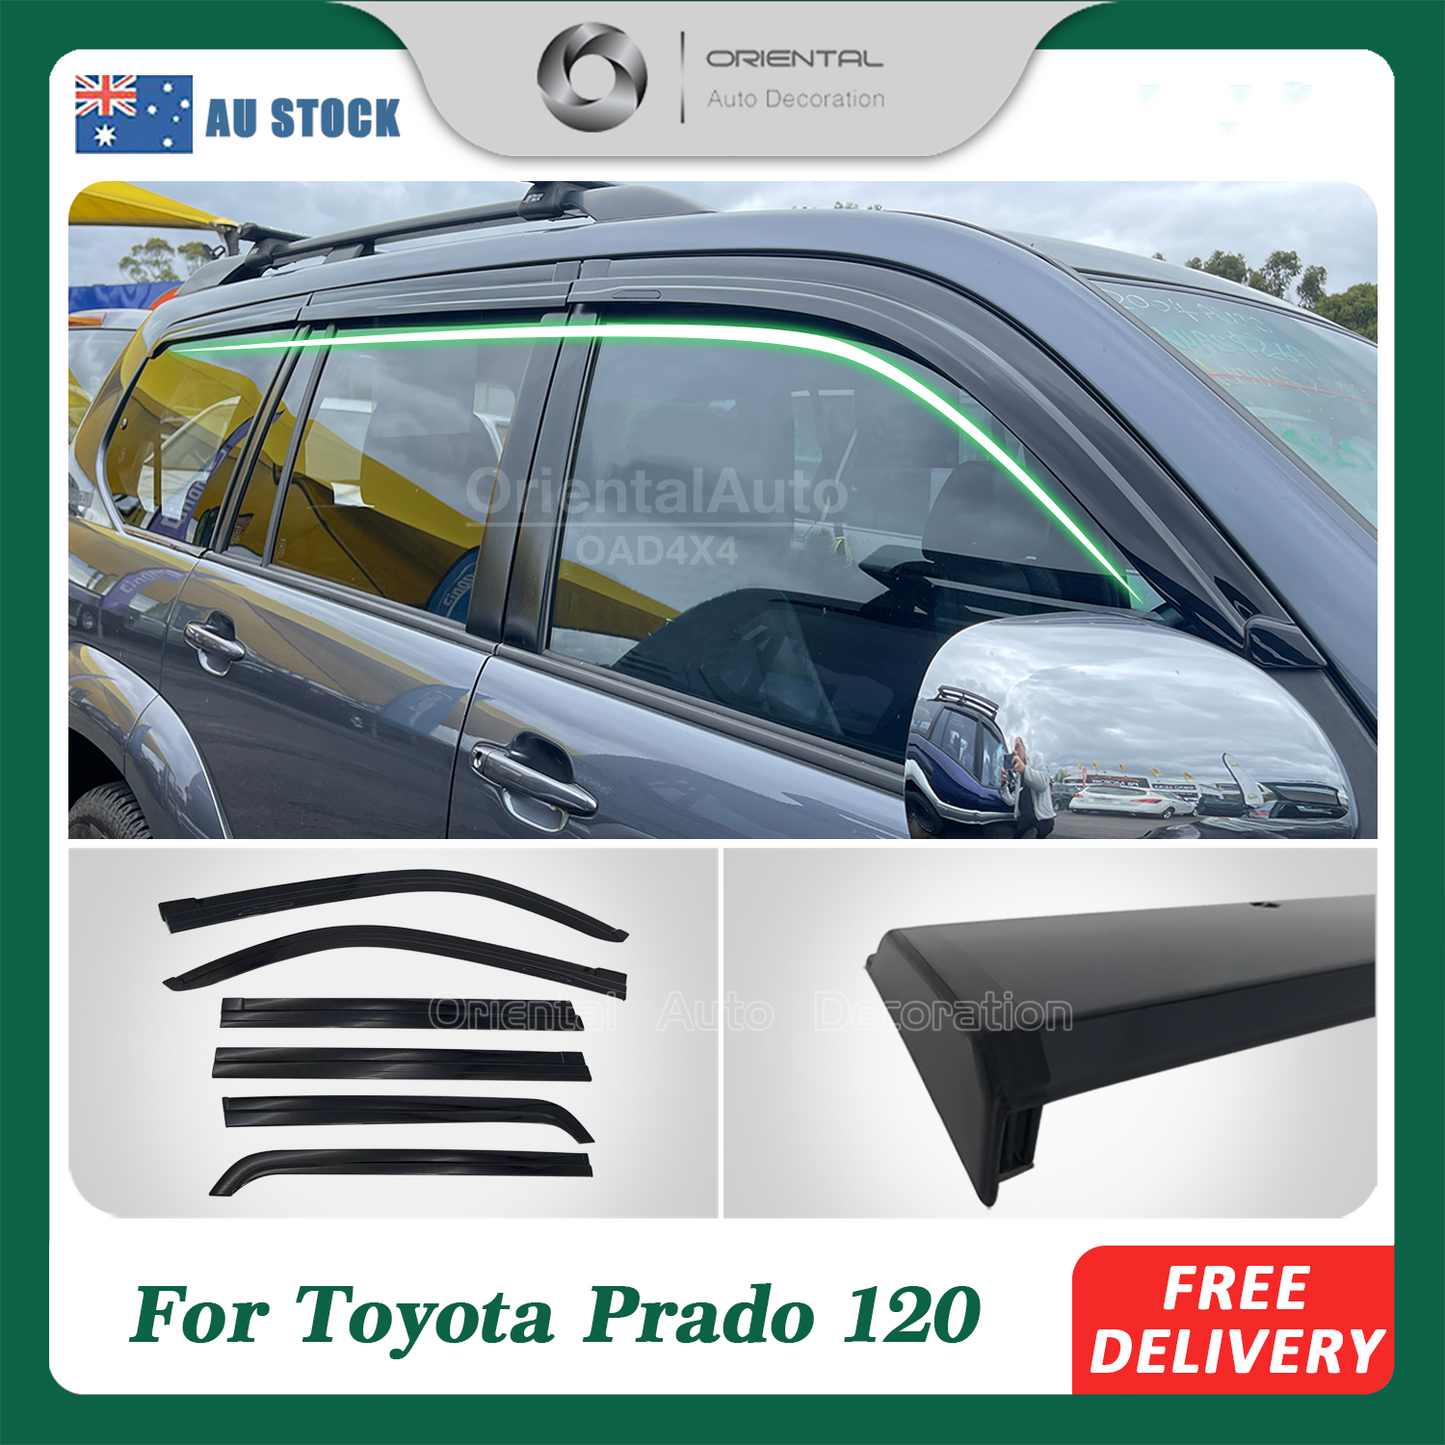 OAD Injection 6pcs Weathershields For Toyota Land Cruiser Prado 120 2003-2009 Weather Shields Window Visor